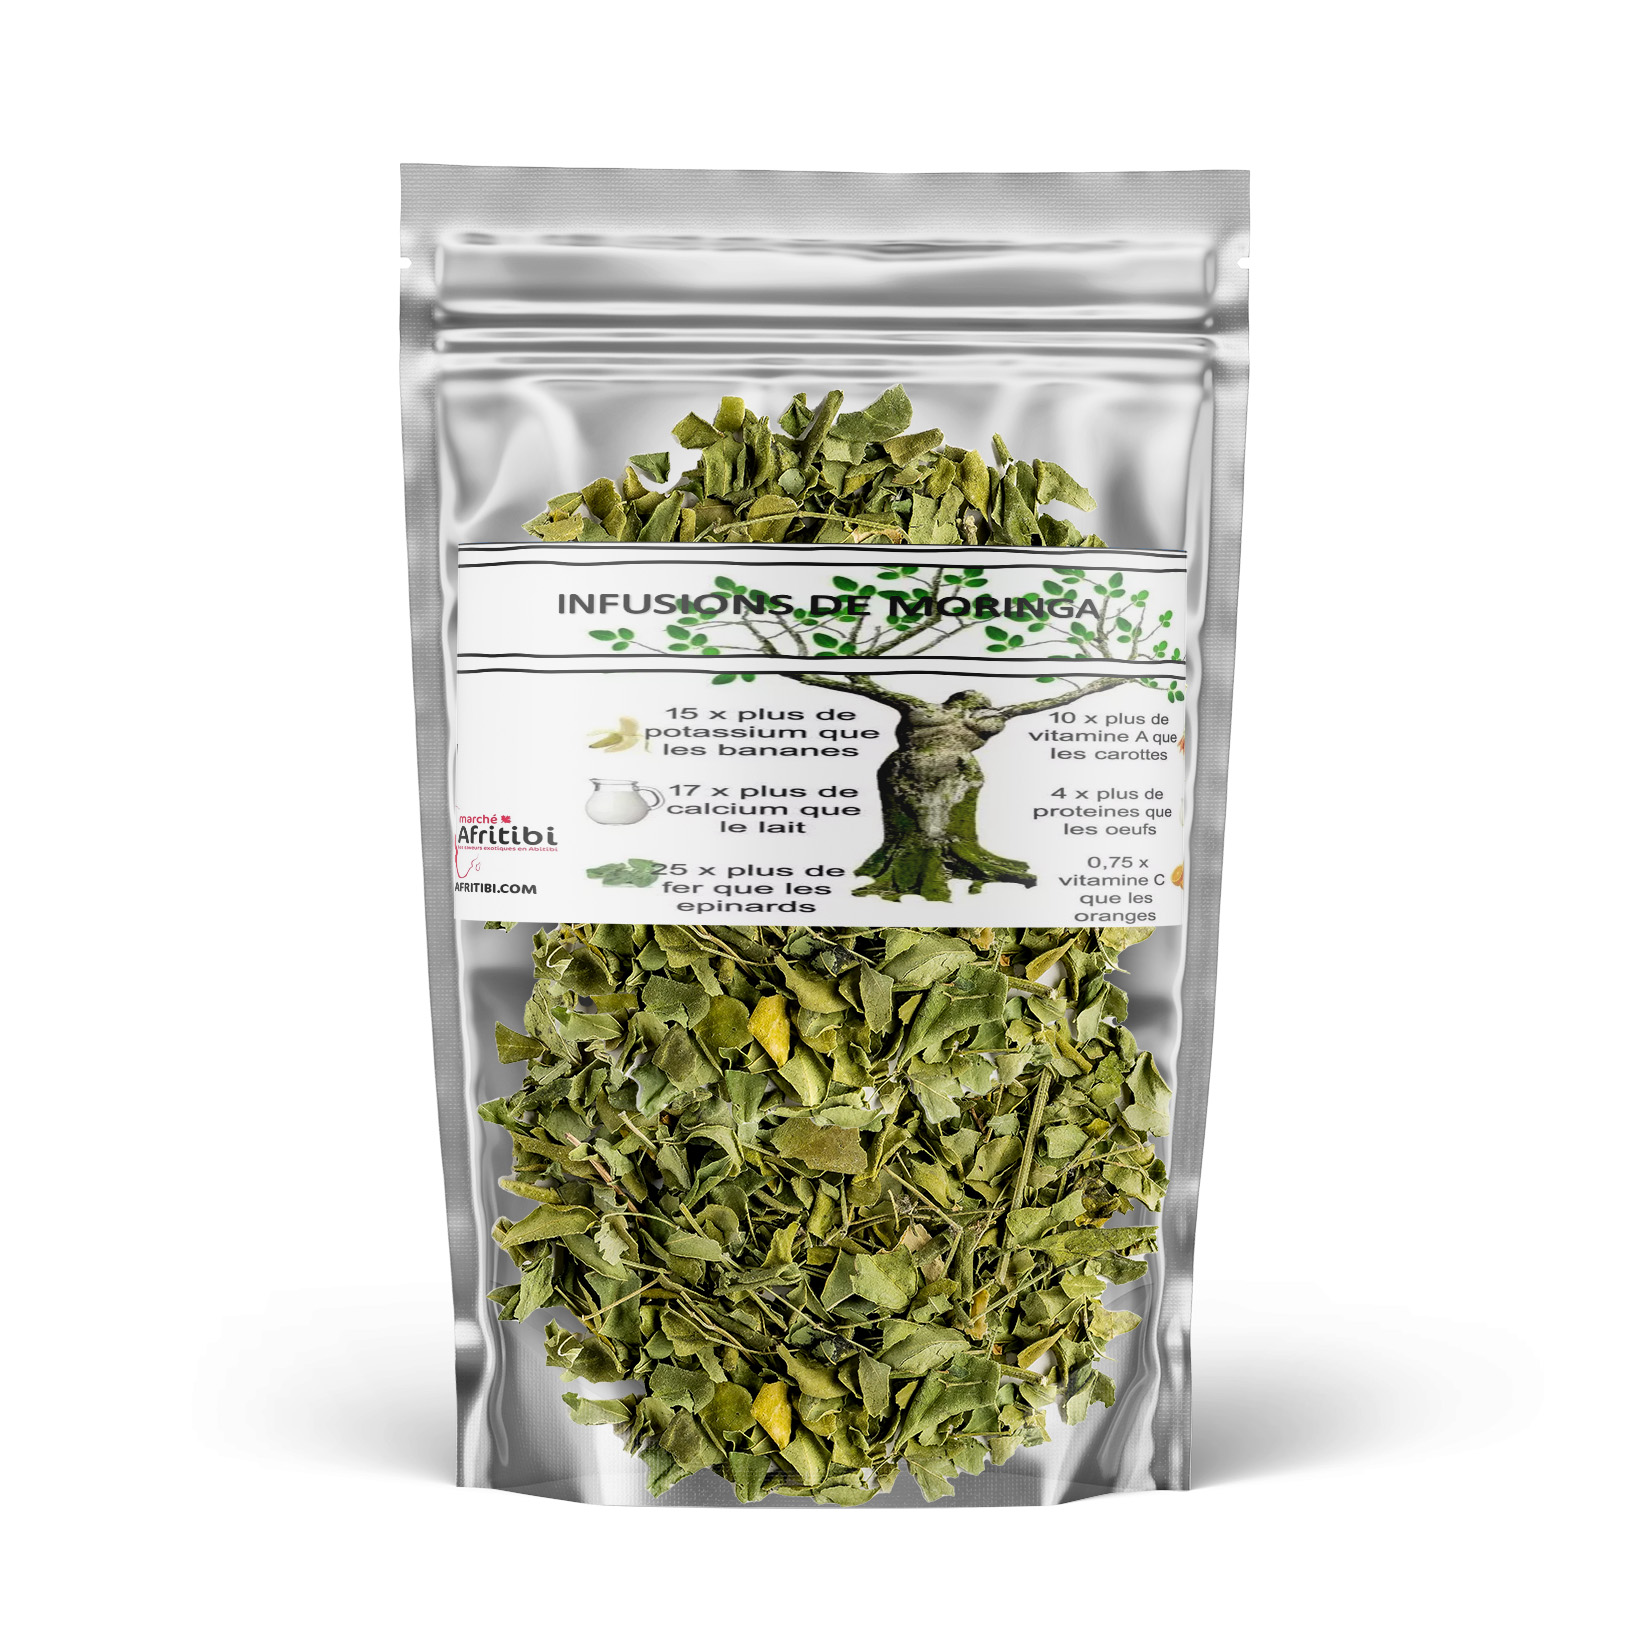 Organic Moringa Herbal tea